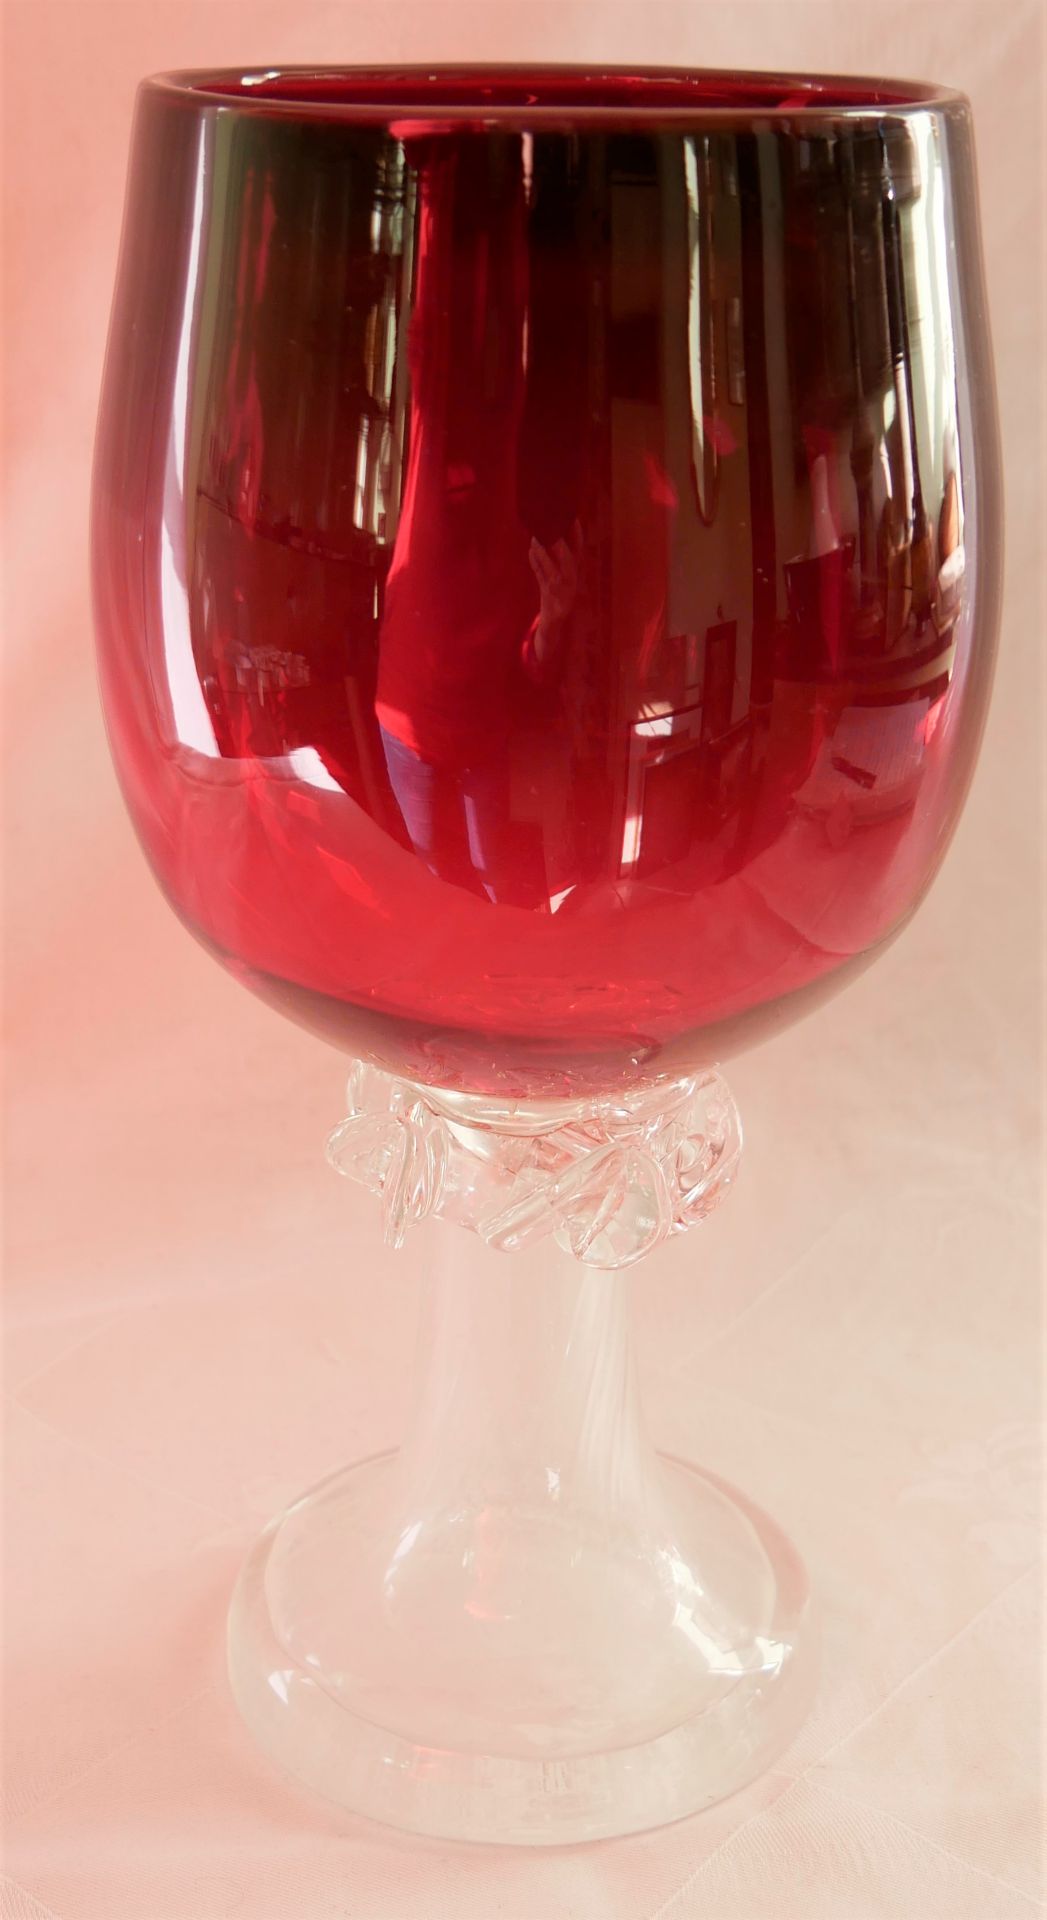 großes 2 farbiges Murano Glas in den farben weiß und rot. Höhe ca. 27 cm. Bitte besichtigen